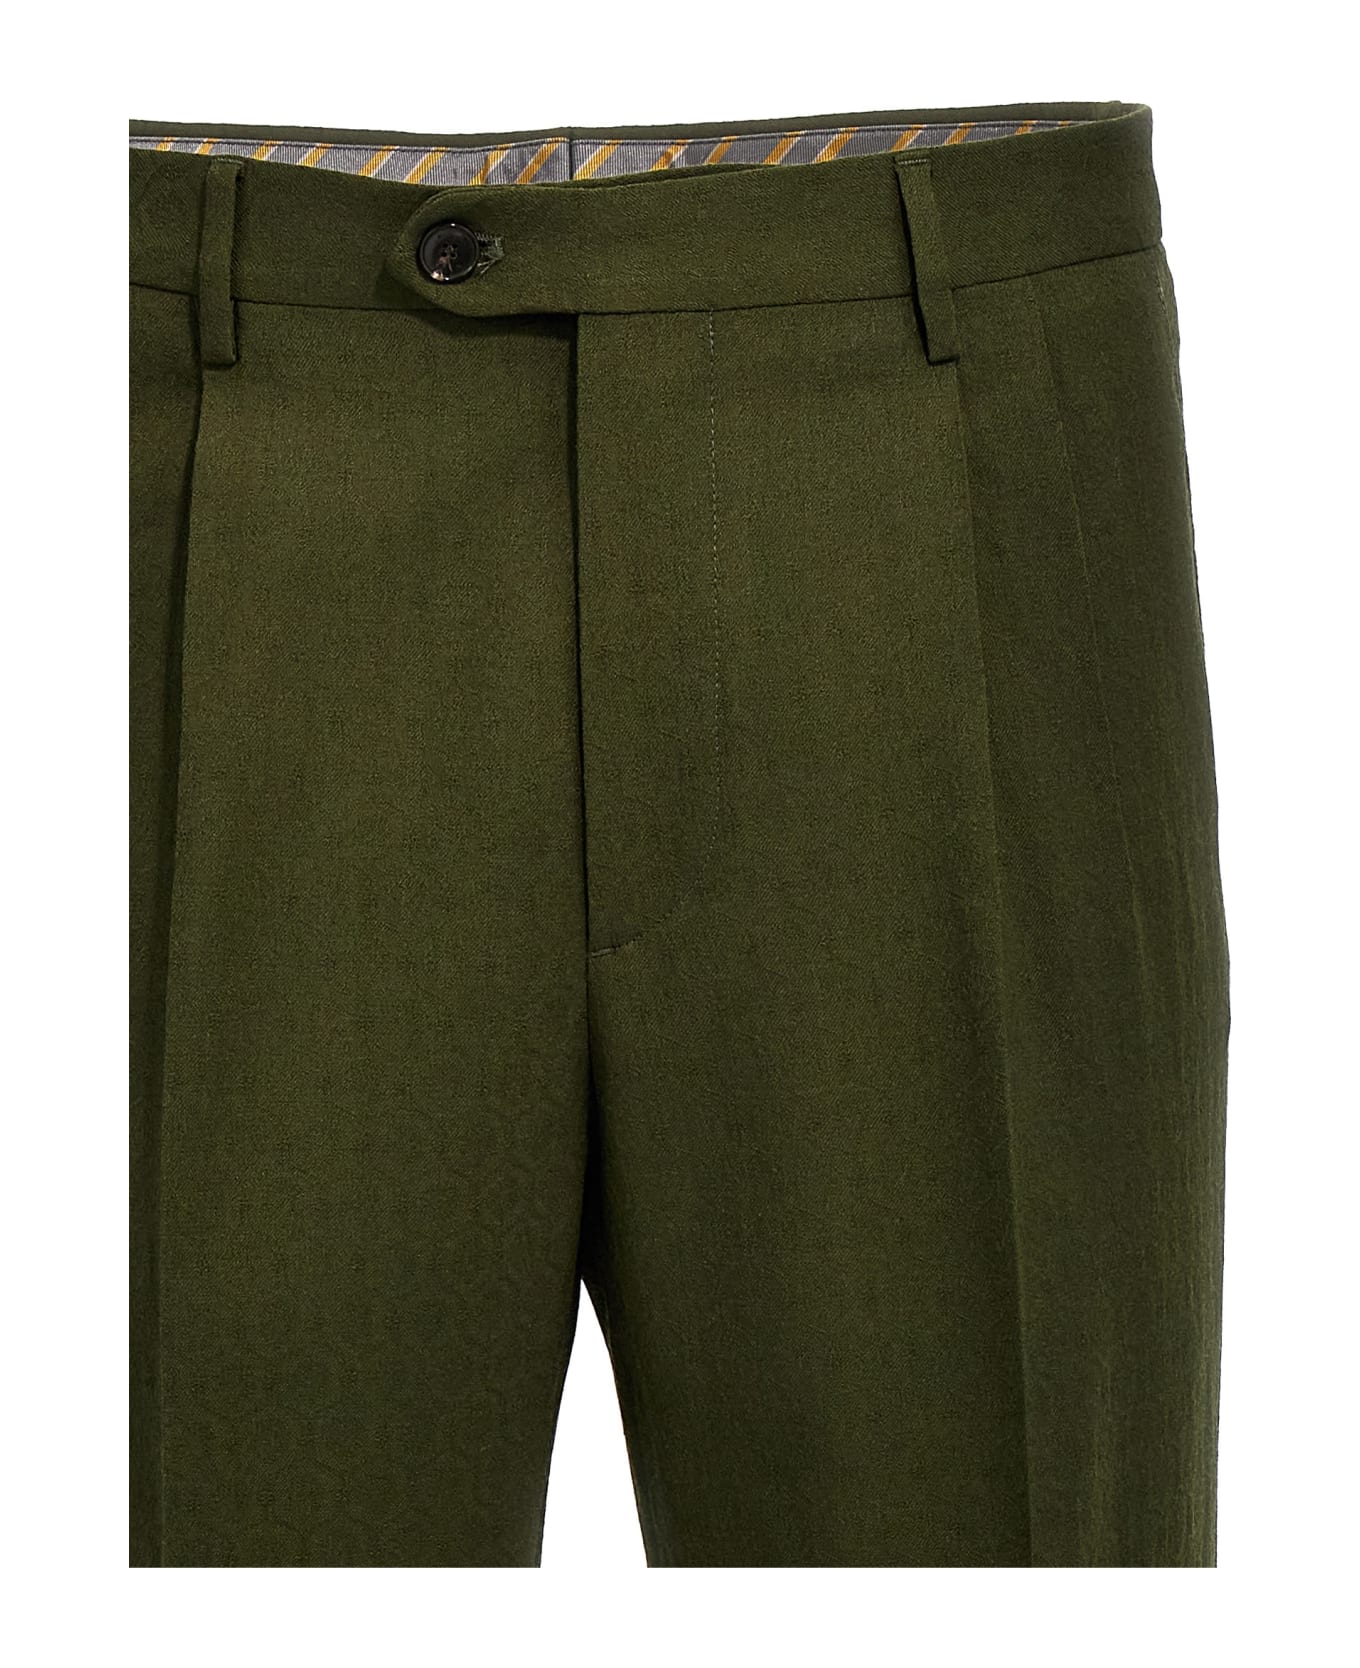 Etro Jacquard Wool Pants - Green ボトムス